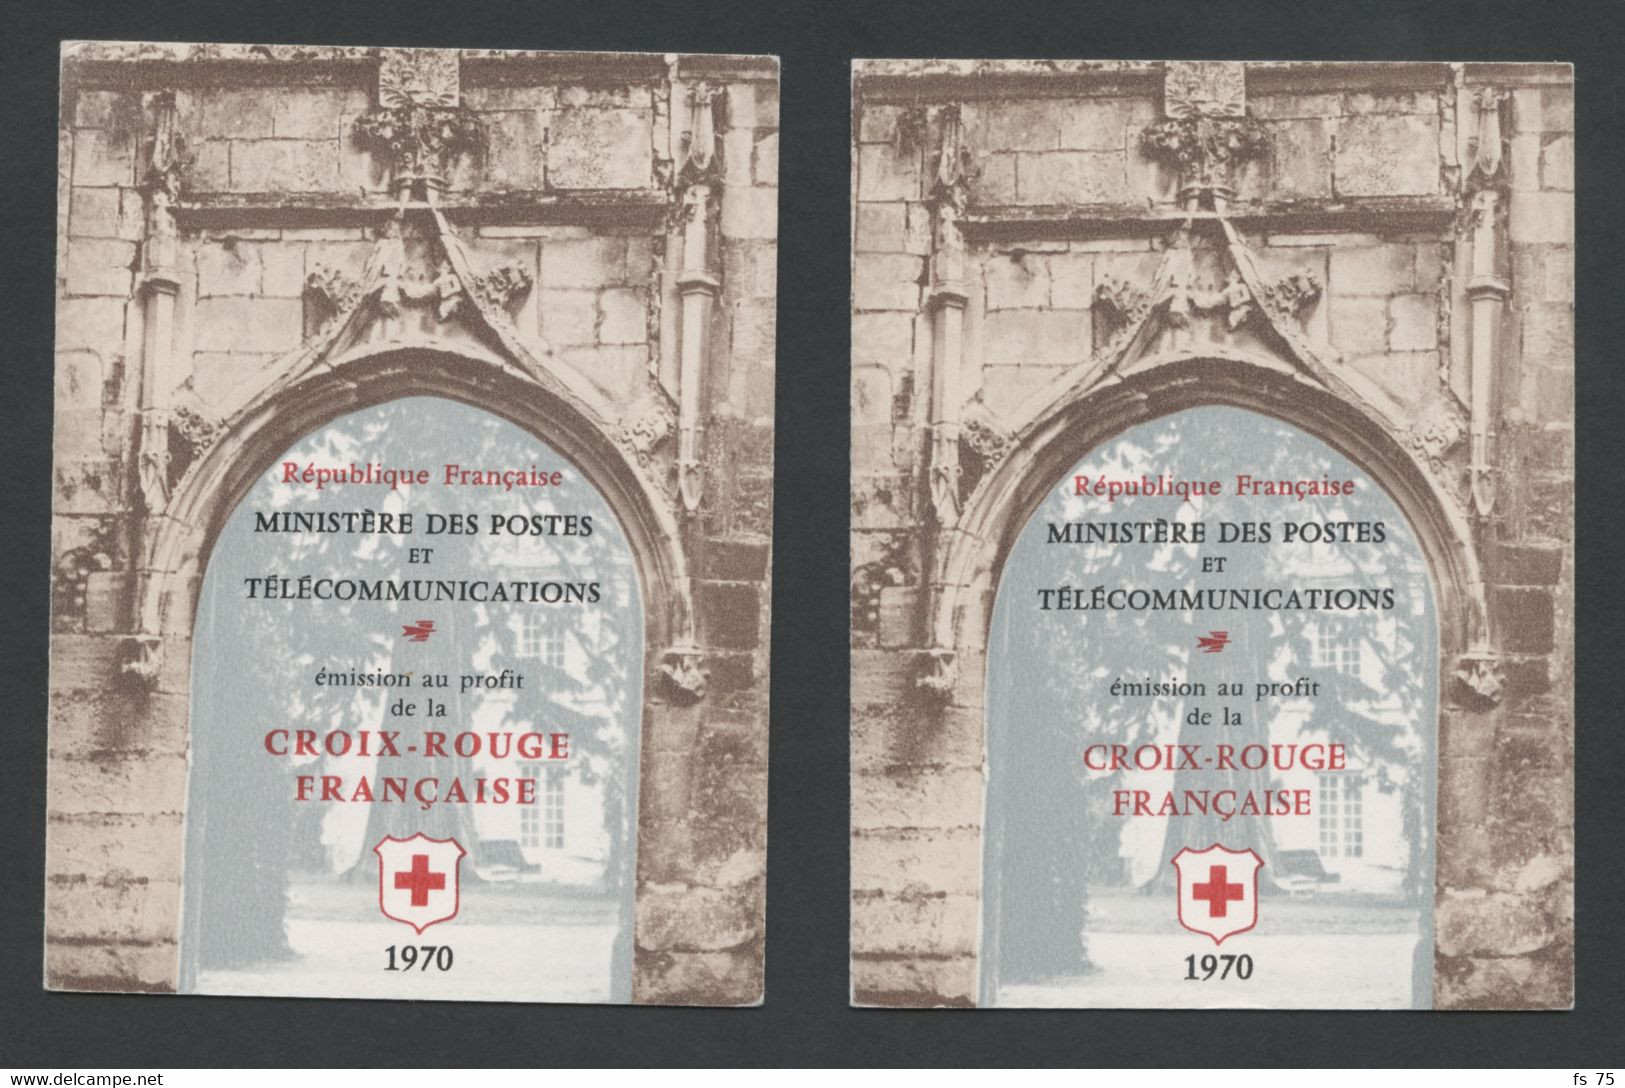 FRANCE - CARNETS N°2019 ET 2019a CROIX ROUGE 1970 - INSCRIPTIONS SUR LA COUVERTURE DE 32MM ET 27MM - Rode Kruis